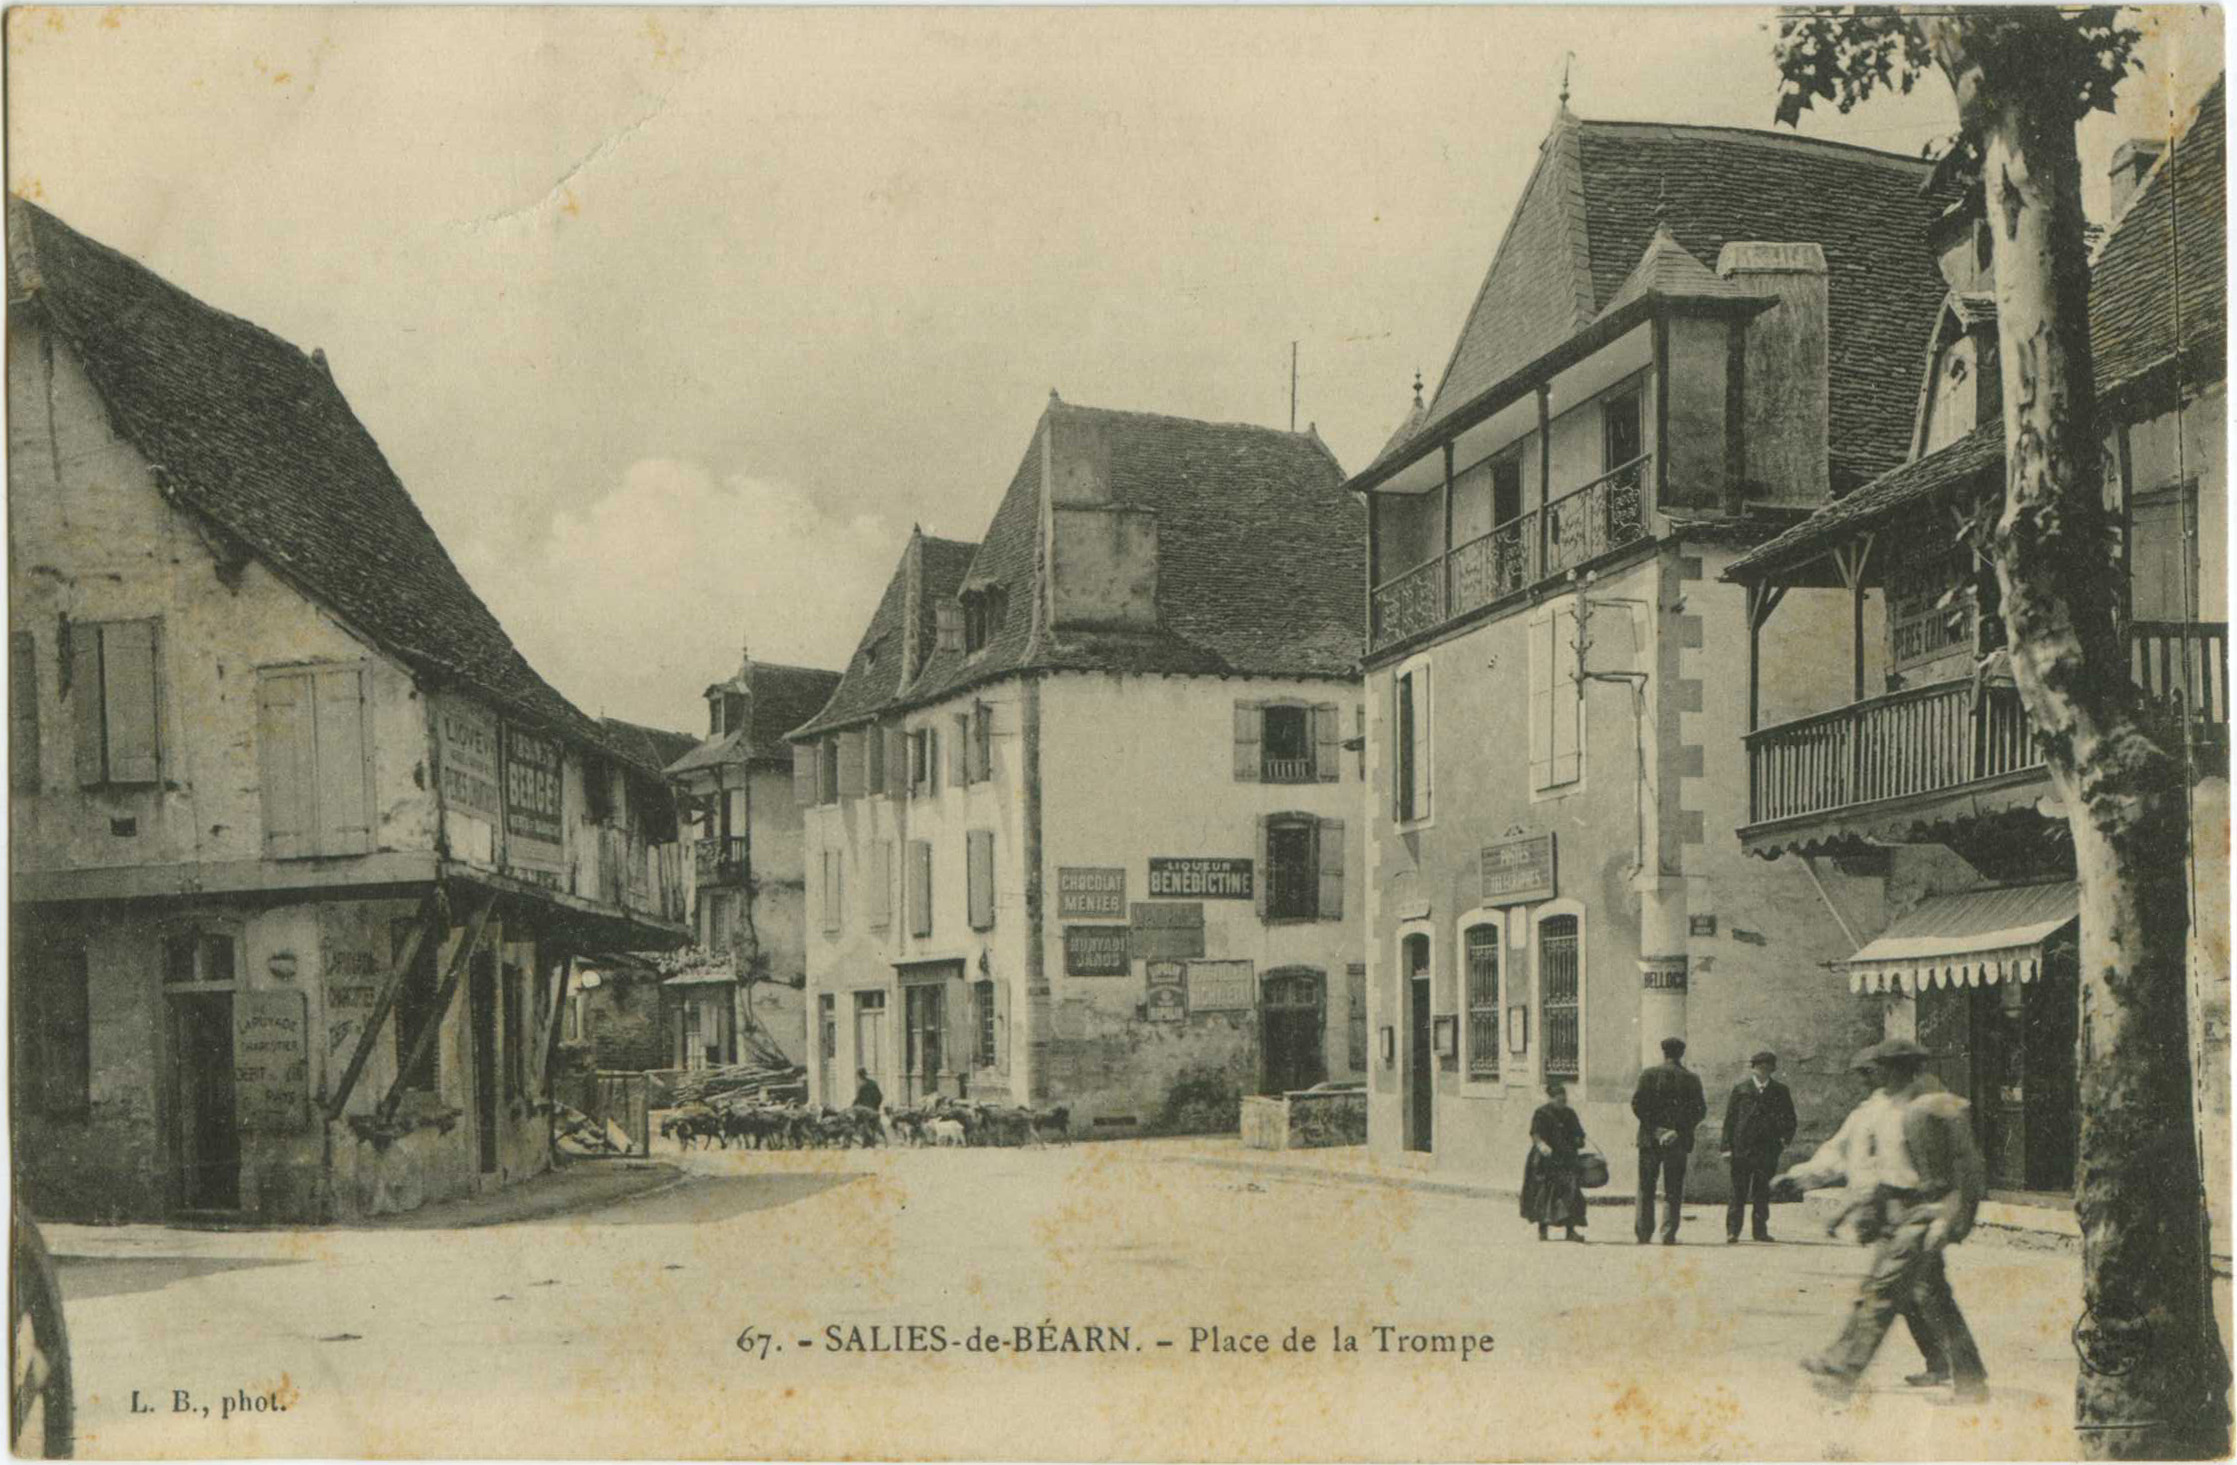 Salies-de-Béarn - Place de la Trompe